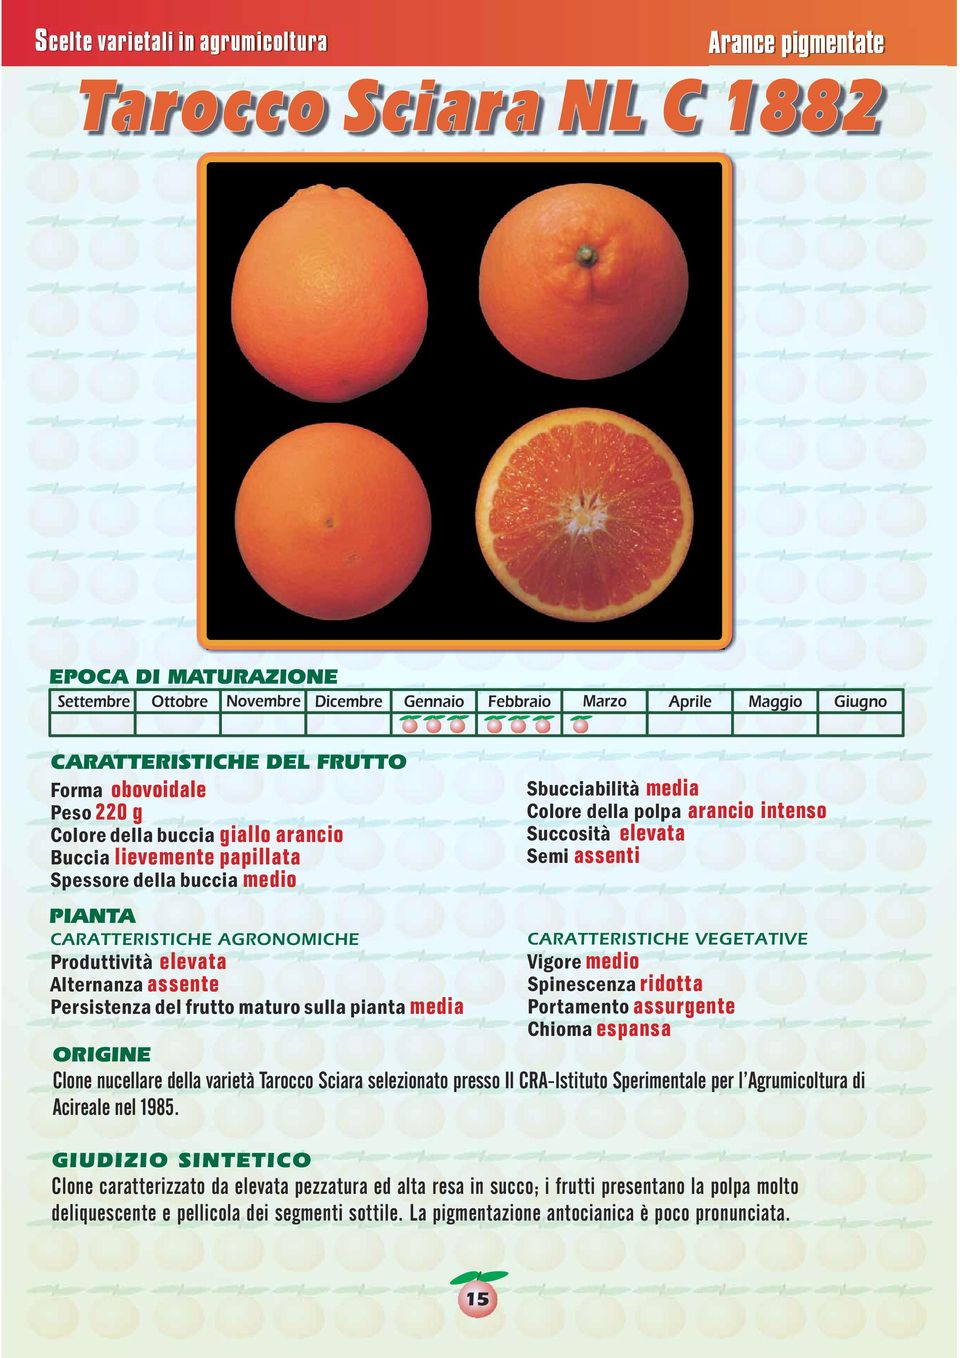 assurgente Chioma espansa Clone nucellare della varietà Tarocco Sciara selezionato presso Il CRA-Istituto Sperimentale per l Agrumicoltura di Acireale nel 1985.